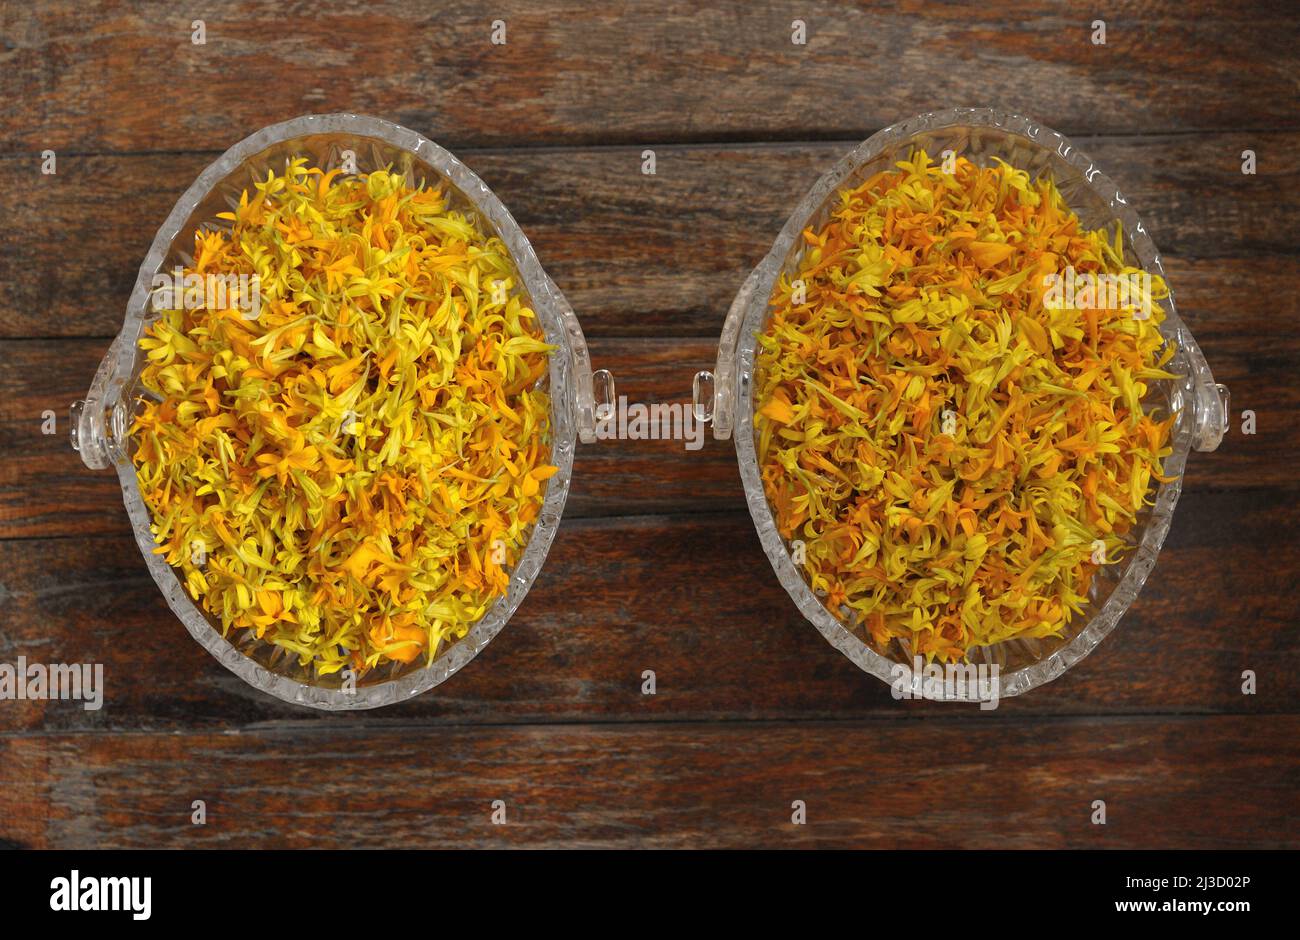 Pétales de marigold jaune, Tagetes, infusion de plantes, tisanes, Pétale de marigold presque sèche pour faire de la tisane dans un bol en verre sur la table en bois. Banque D'Images